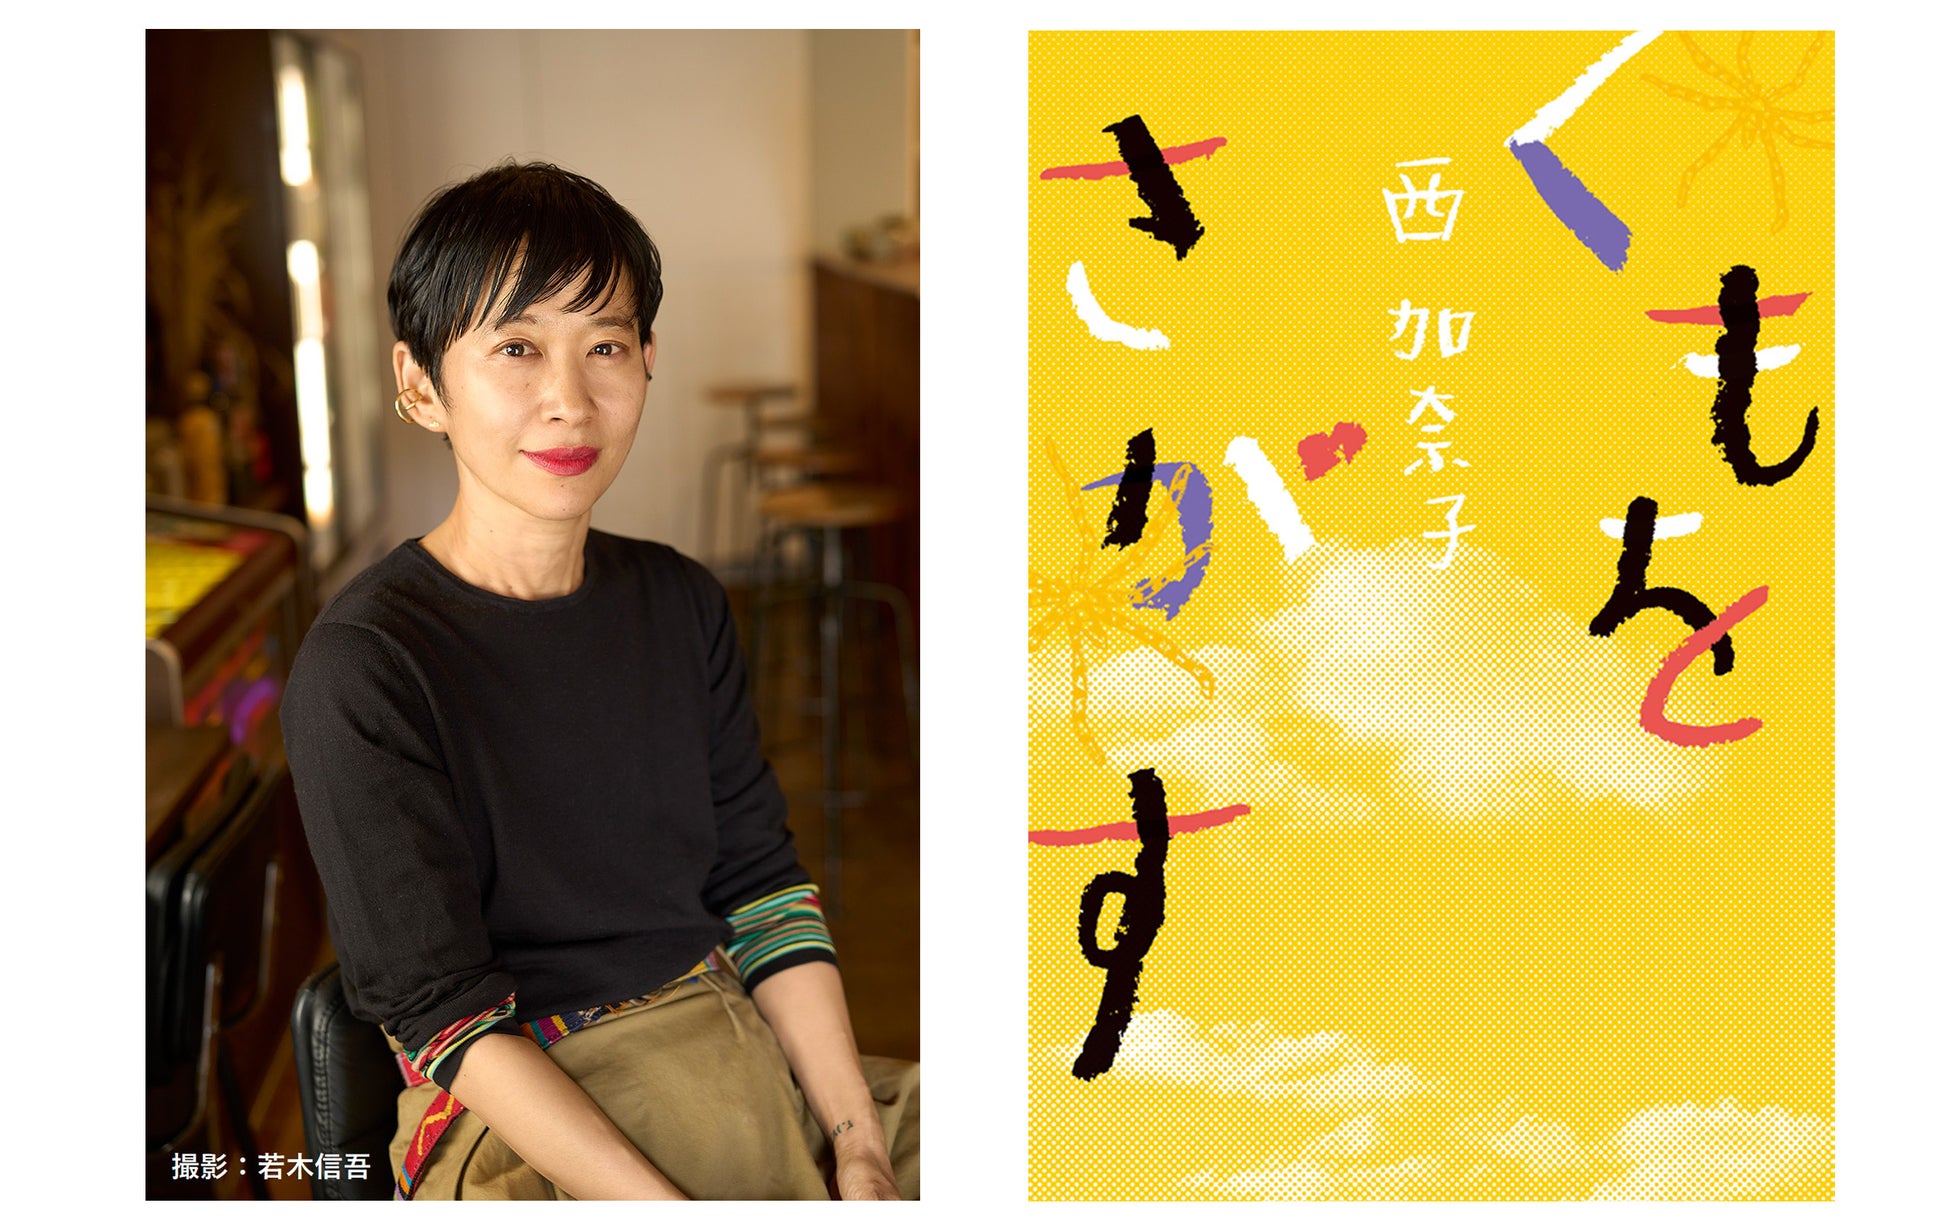 28万部のベストセラー『くもをさがす』著者・西加奈子が、 9月2日「世界一受けたい授業 2時間SP」へ出演決定！